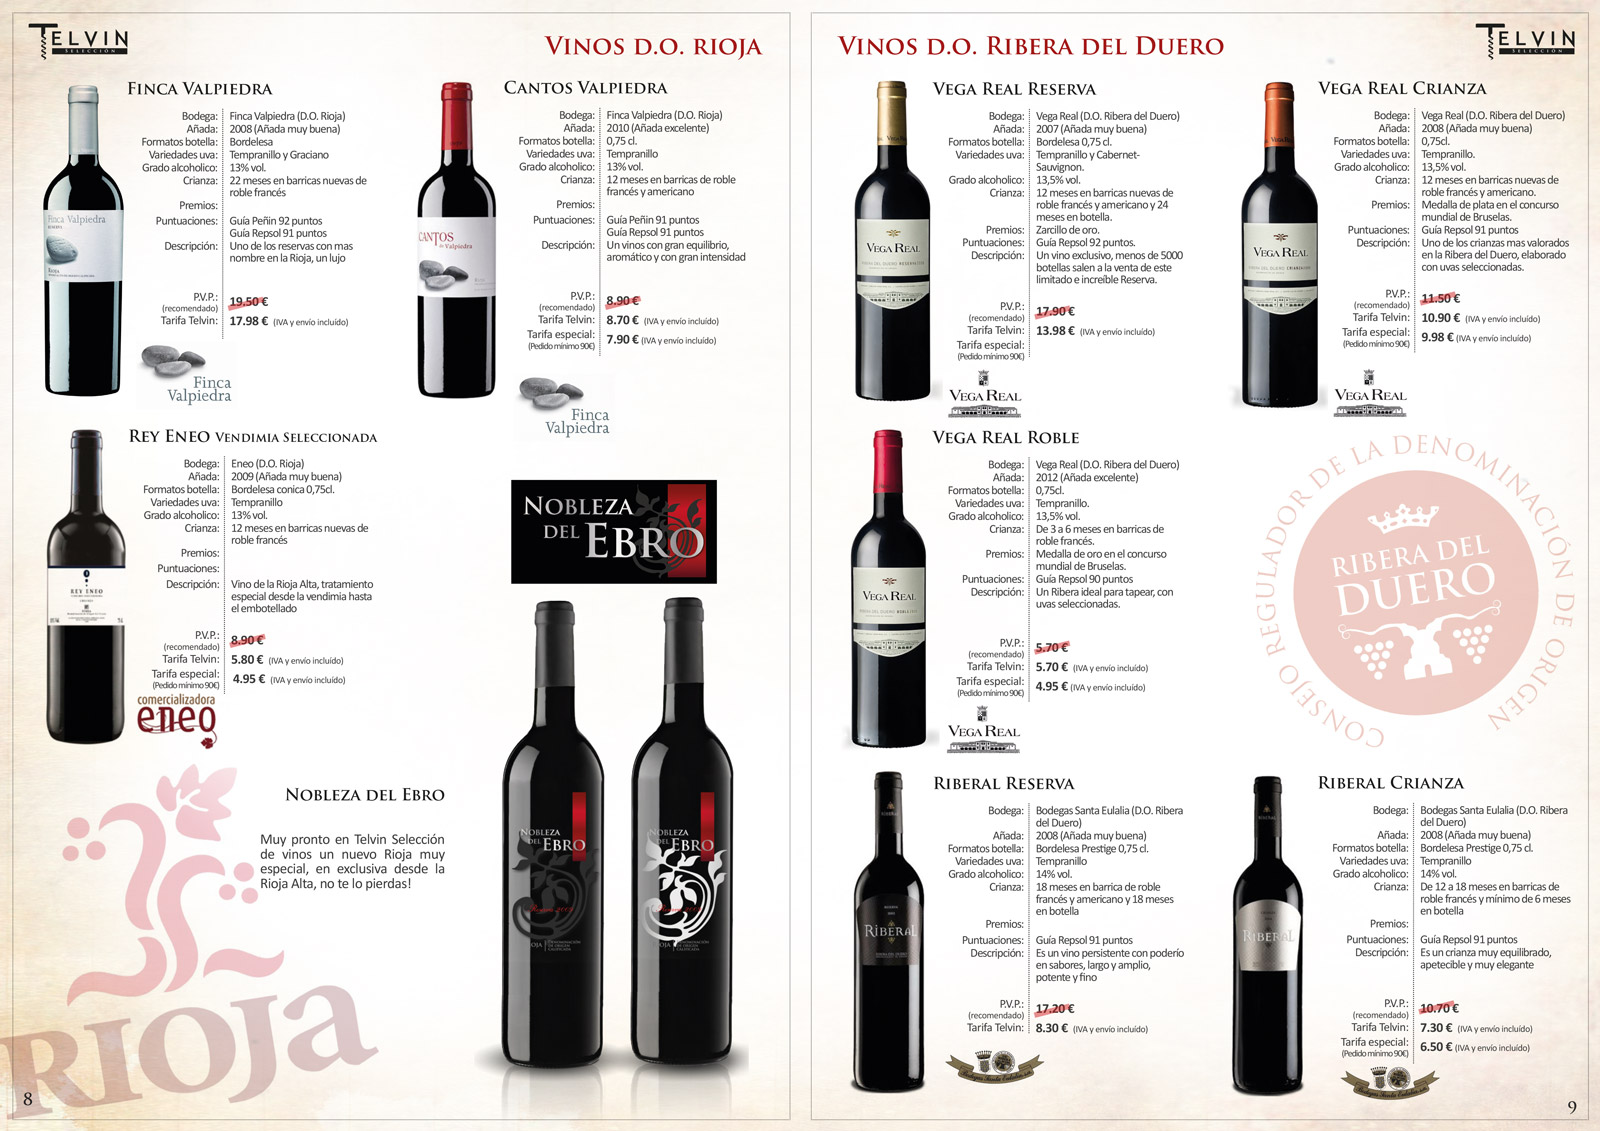 Diseño gráfico y creativo de maquetación de catálogos de productos para bodega exportadora de vinos, licores y cavas a nivel nacional